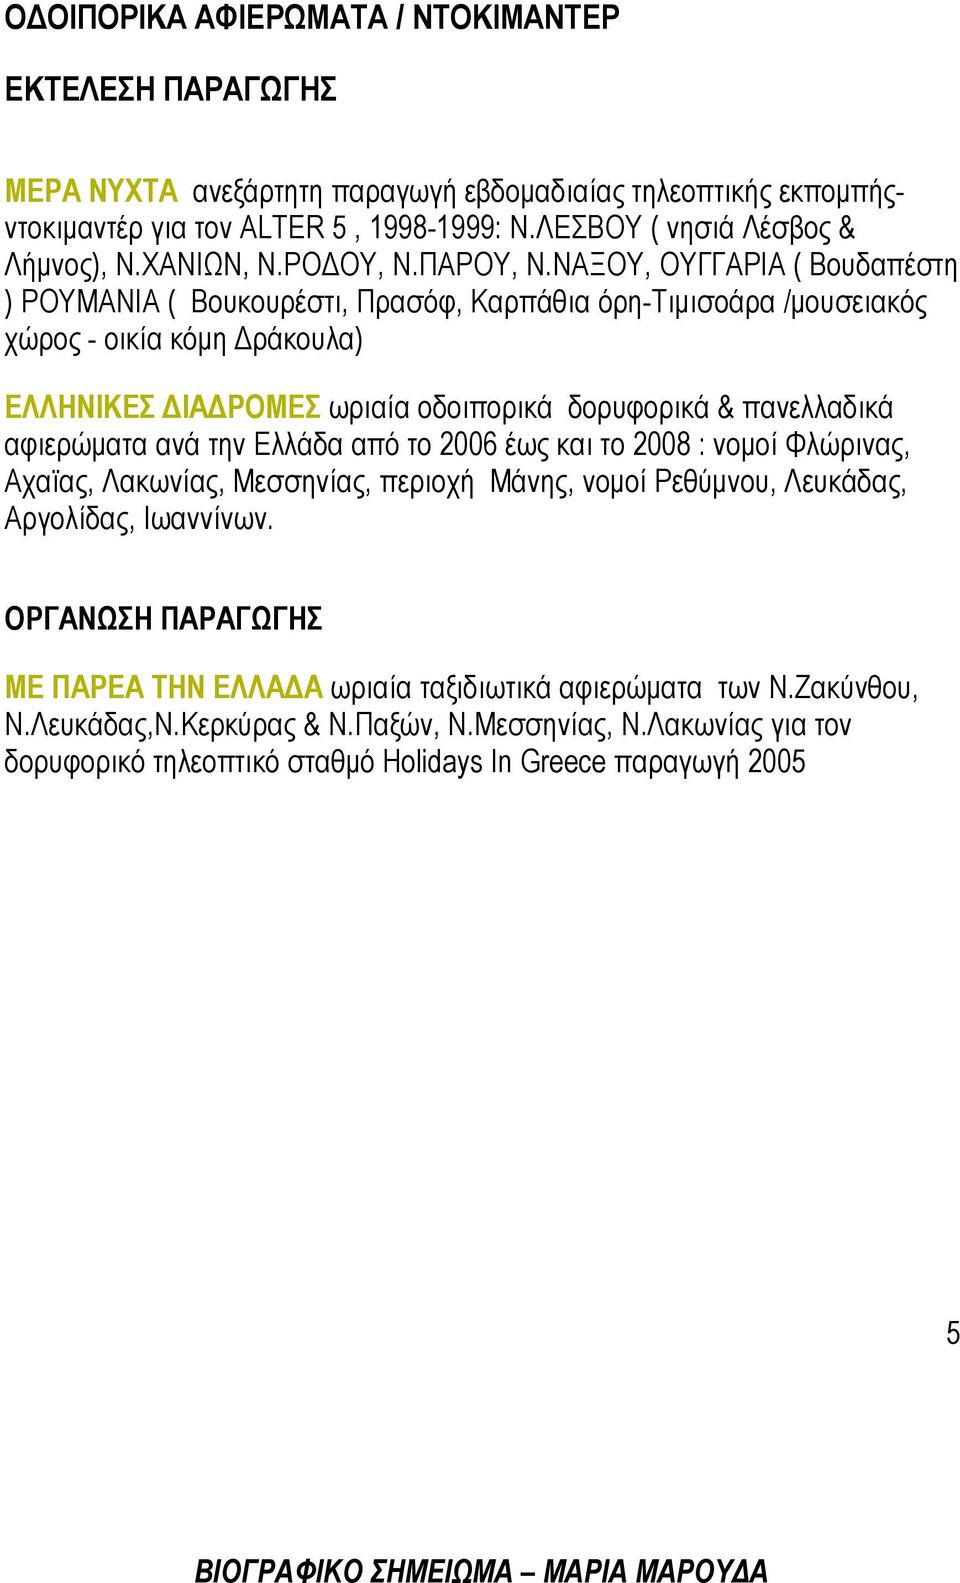 ΝΑΞΟΥ, OYΓΓΑΡΙΑ ( Βουδαπέστη ) ΡΟΥΜΑΝΙΑ ( Βουκουρέστι, Πρασόφ, Καρπάθια όρη-τιμισοάρα /μουσειακός χώρος - οικία κόμη Δράκουλα) ΕΛΛΗΝΙΚΕΣ ΔΙΑΔΡΟΜΕΣ ωριαία οδοιπορικά δορυφορικά & πανελλαδικά